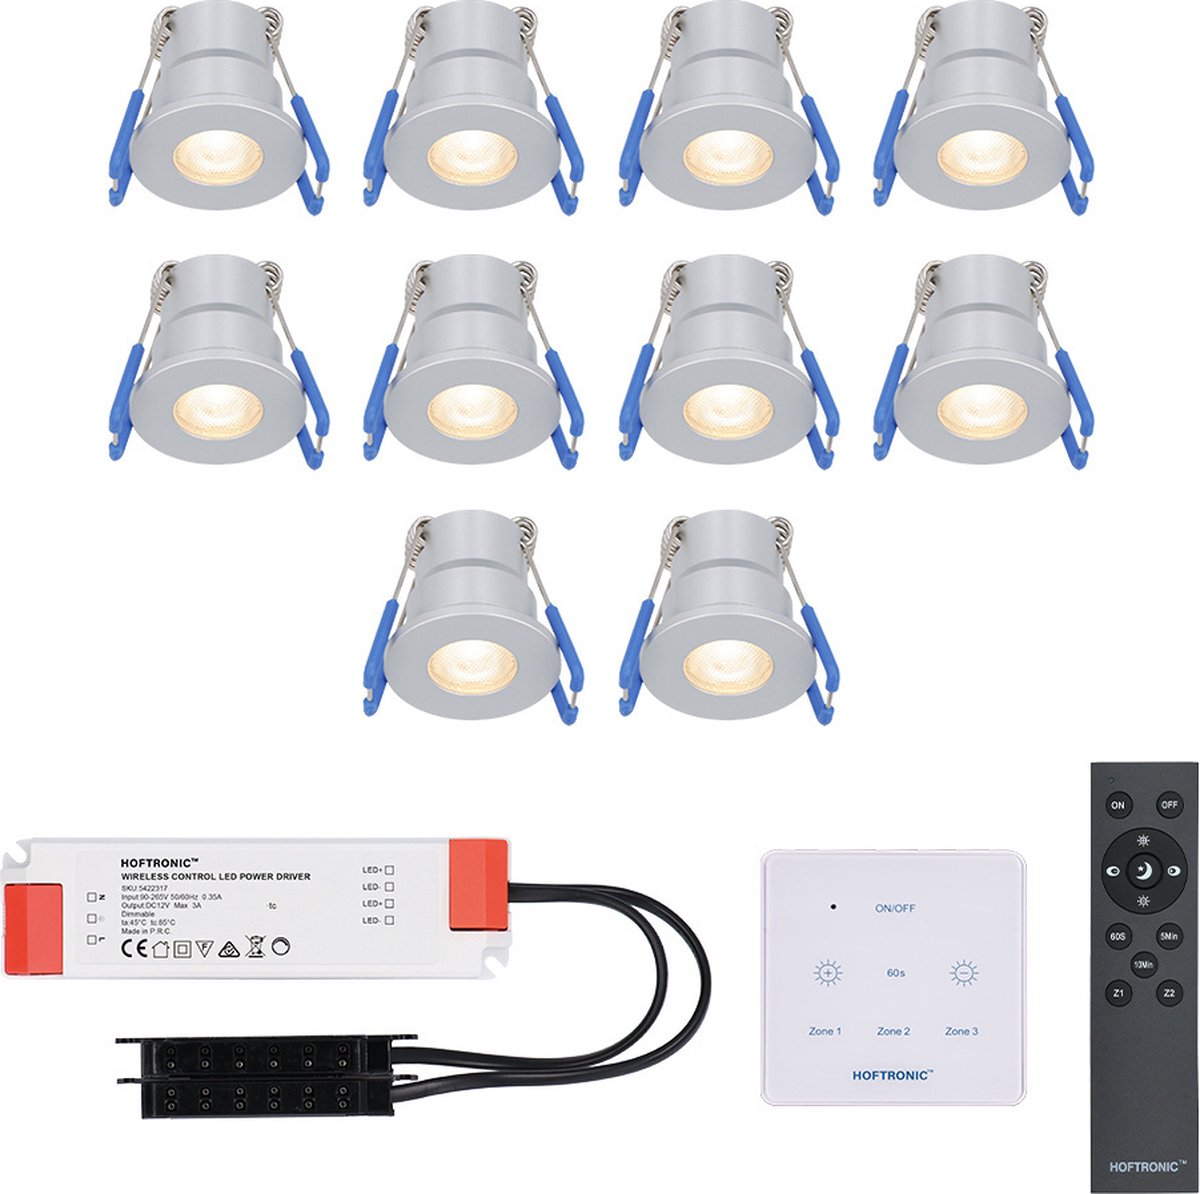 CREE LED inbouwspots 10x3W dimbaar - IP65 waterdicht - incl. Touch muurdimmer en afstandsbediening - set Malaga 10 Stuks